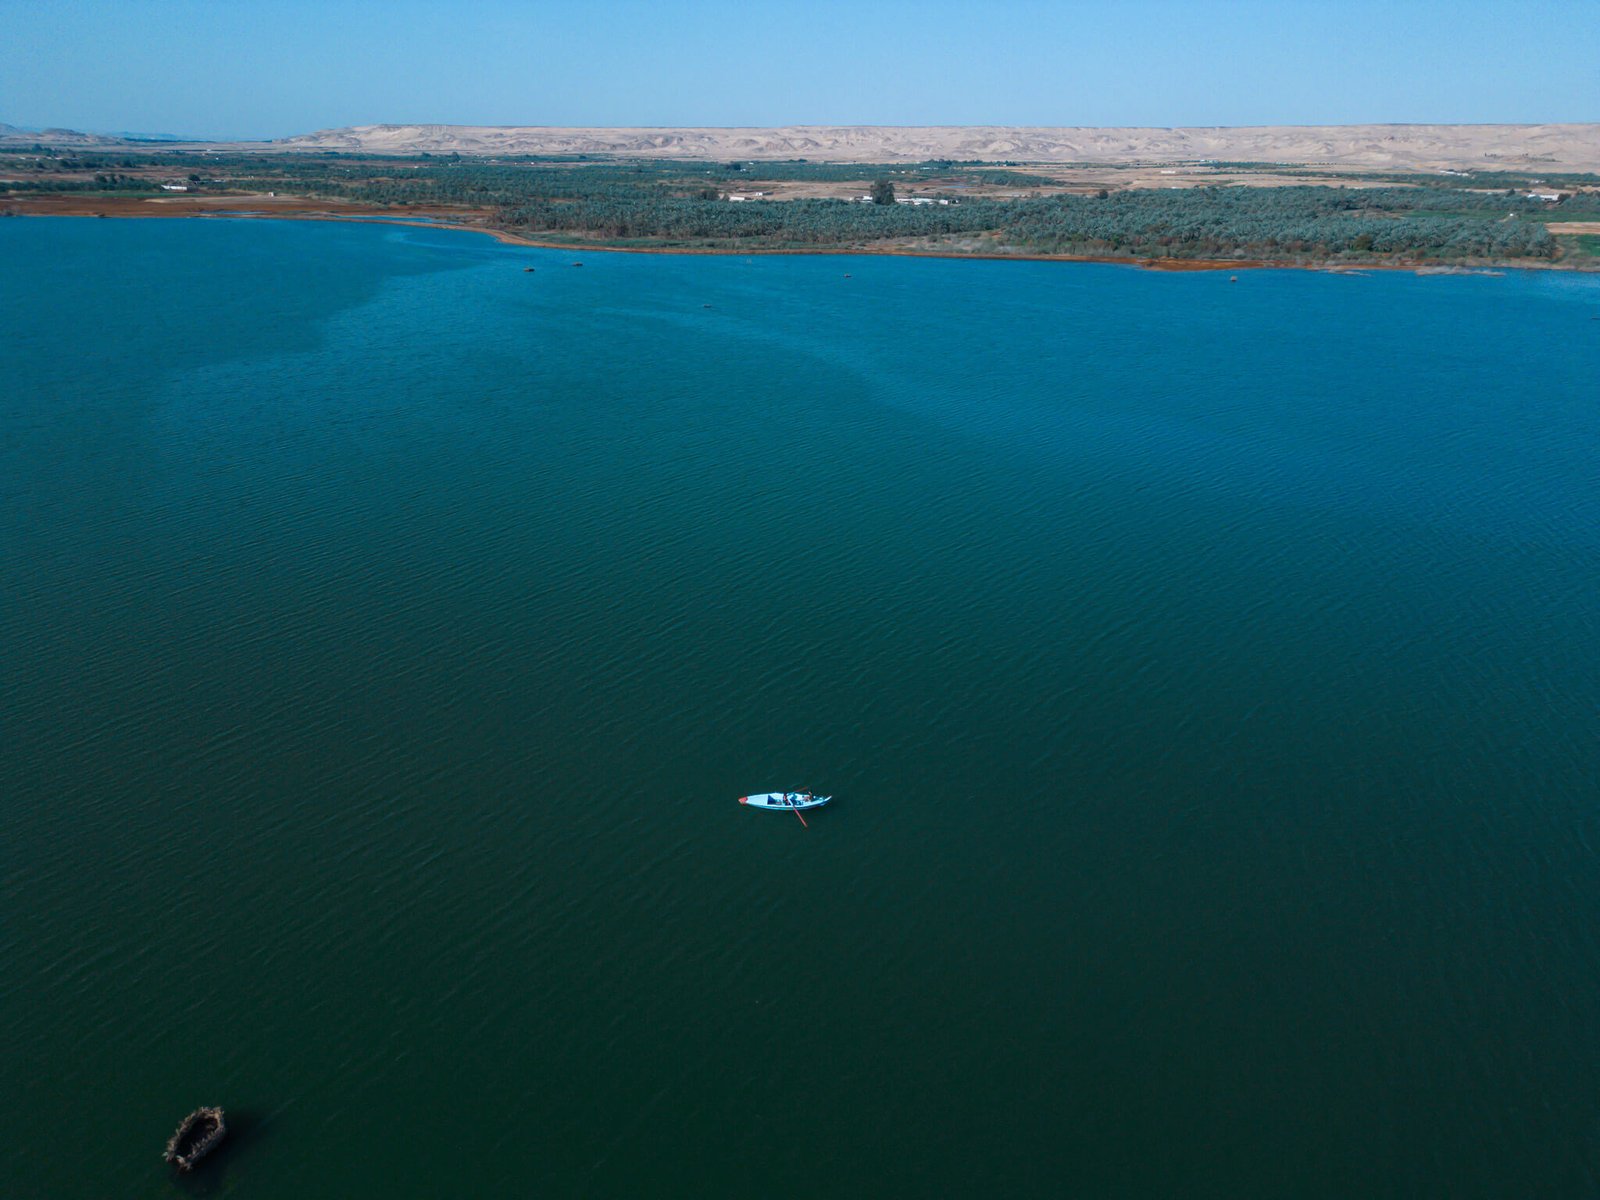 Bahariya oasis salt lake